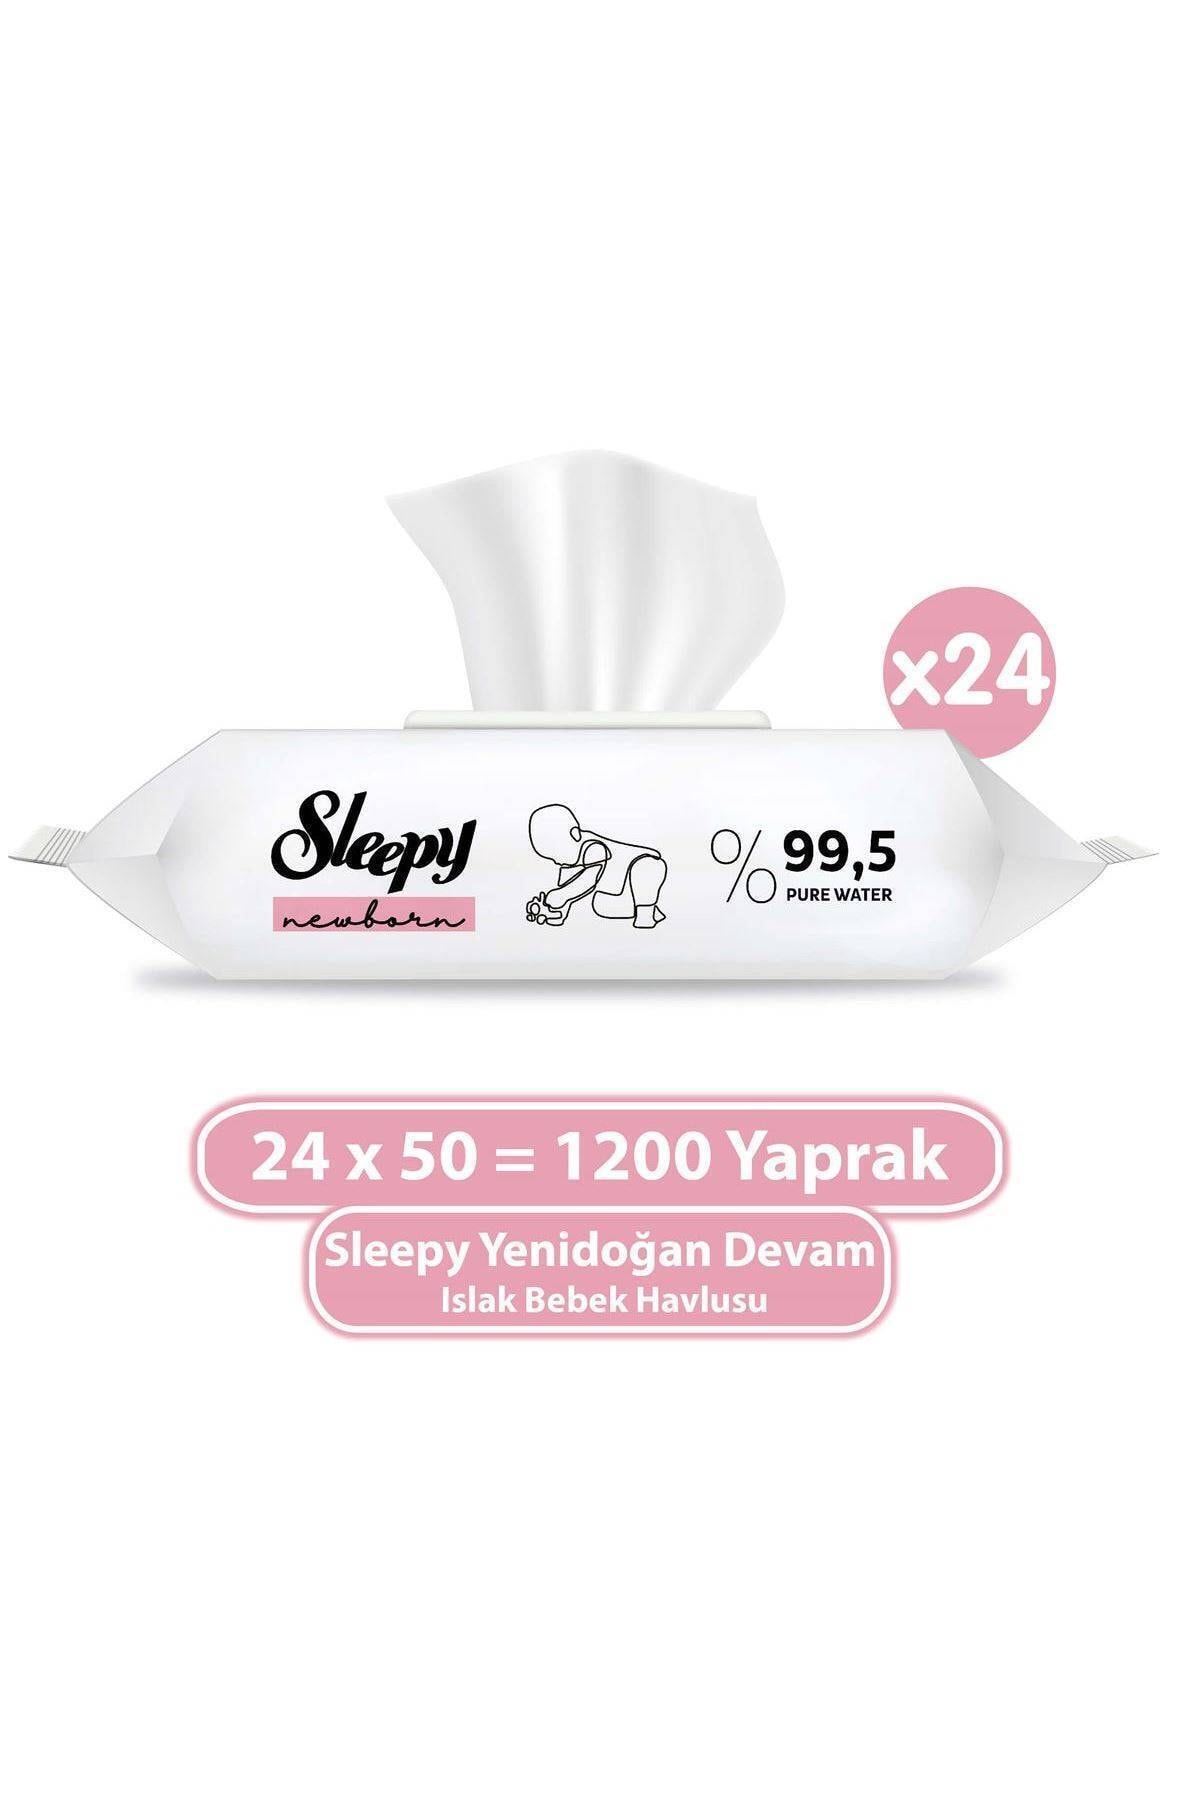 Sleepy Yenidoğan Devam Islak Bebek Havlusu 24x50 (1200 Yaprak)